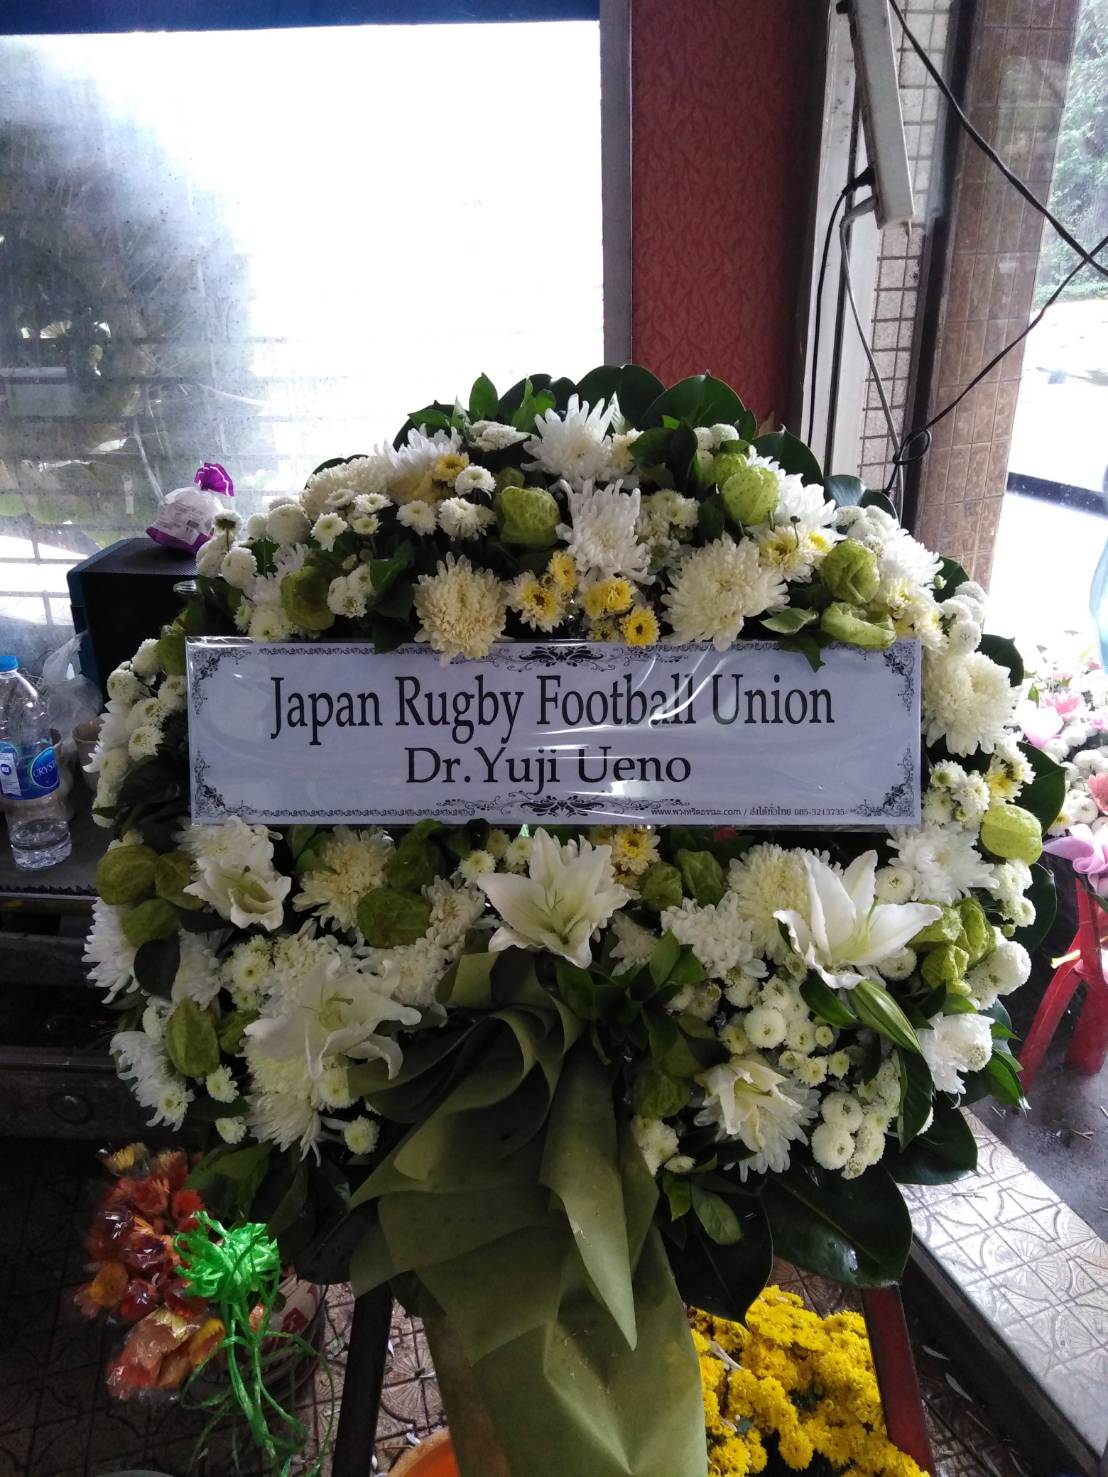 ร้านพวงหรีดวัดมกุฎ พวงหรีดจาก Japan Rugby Football Union